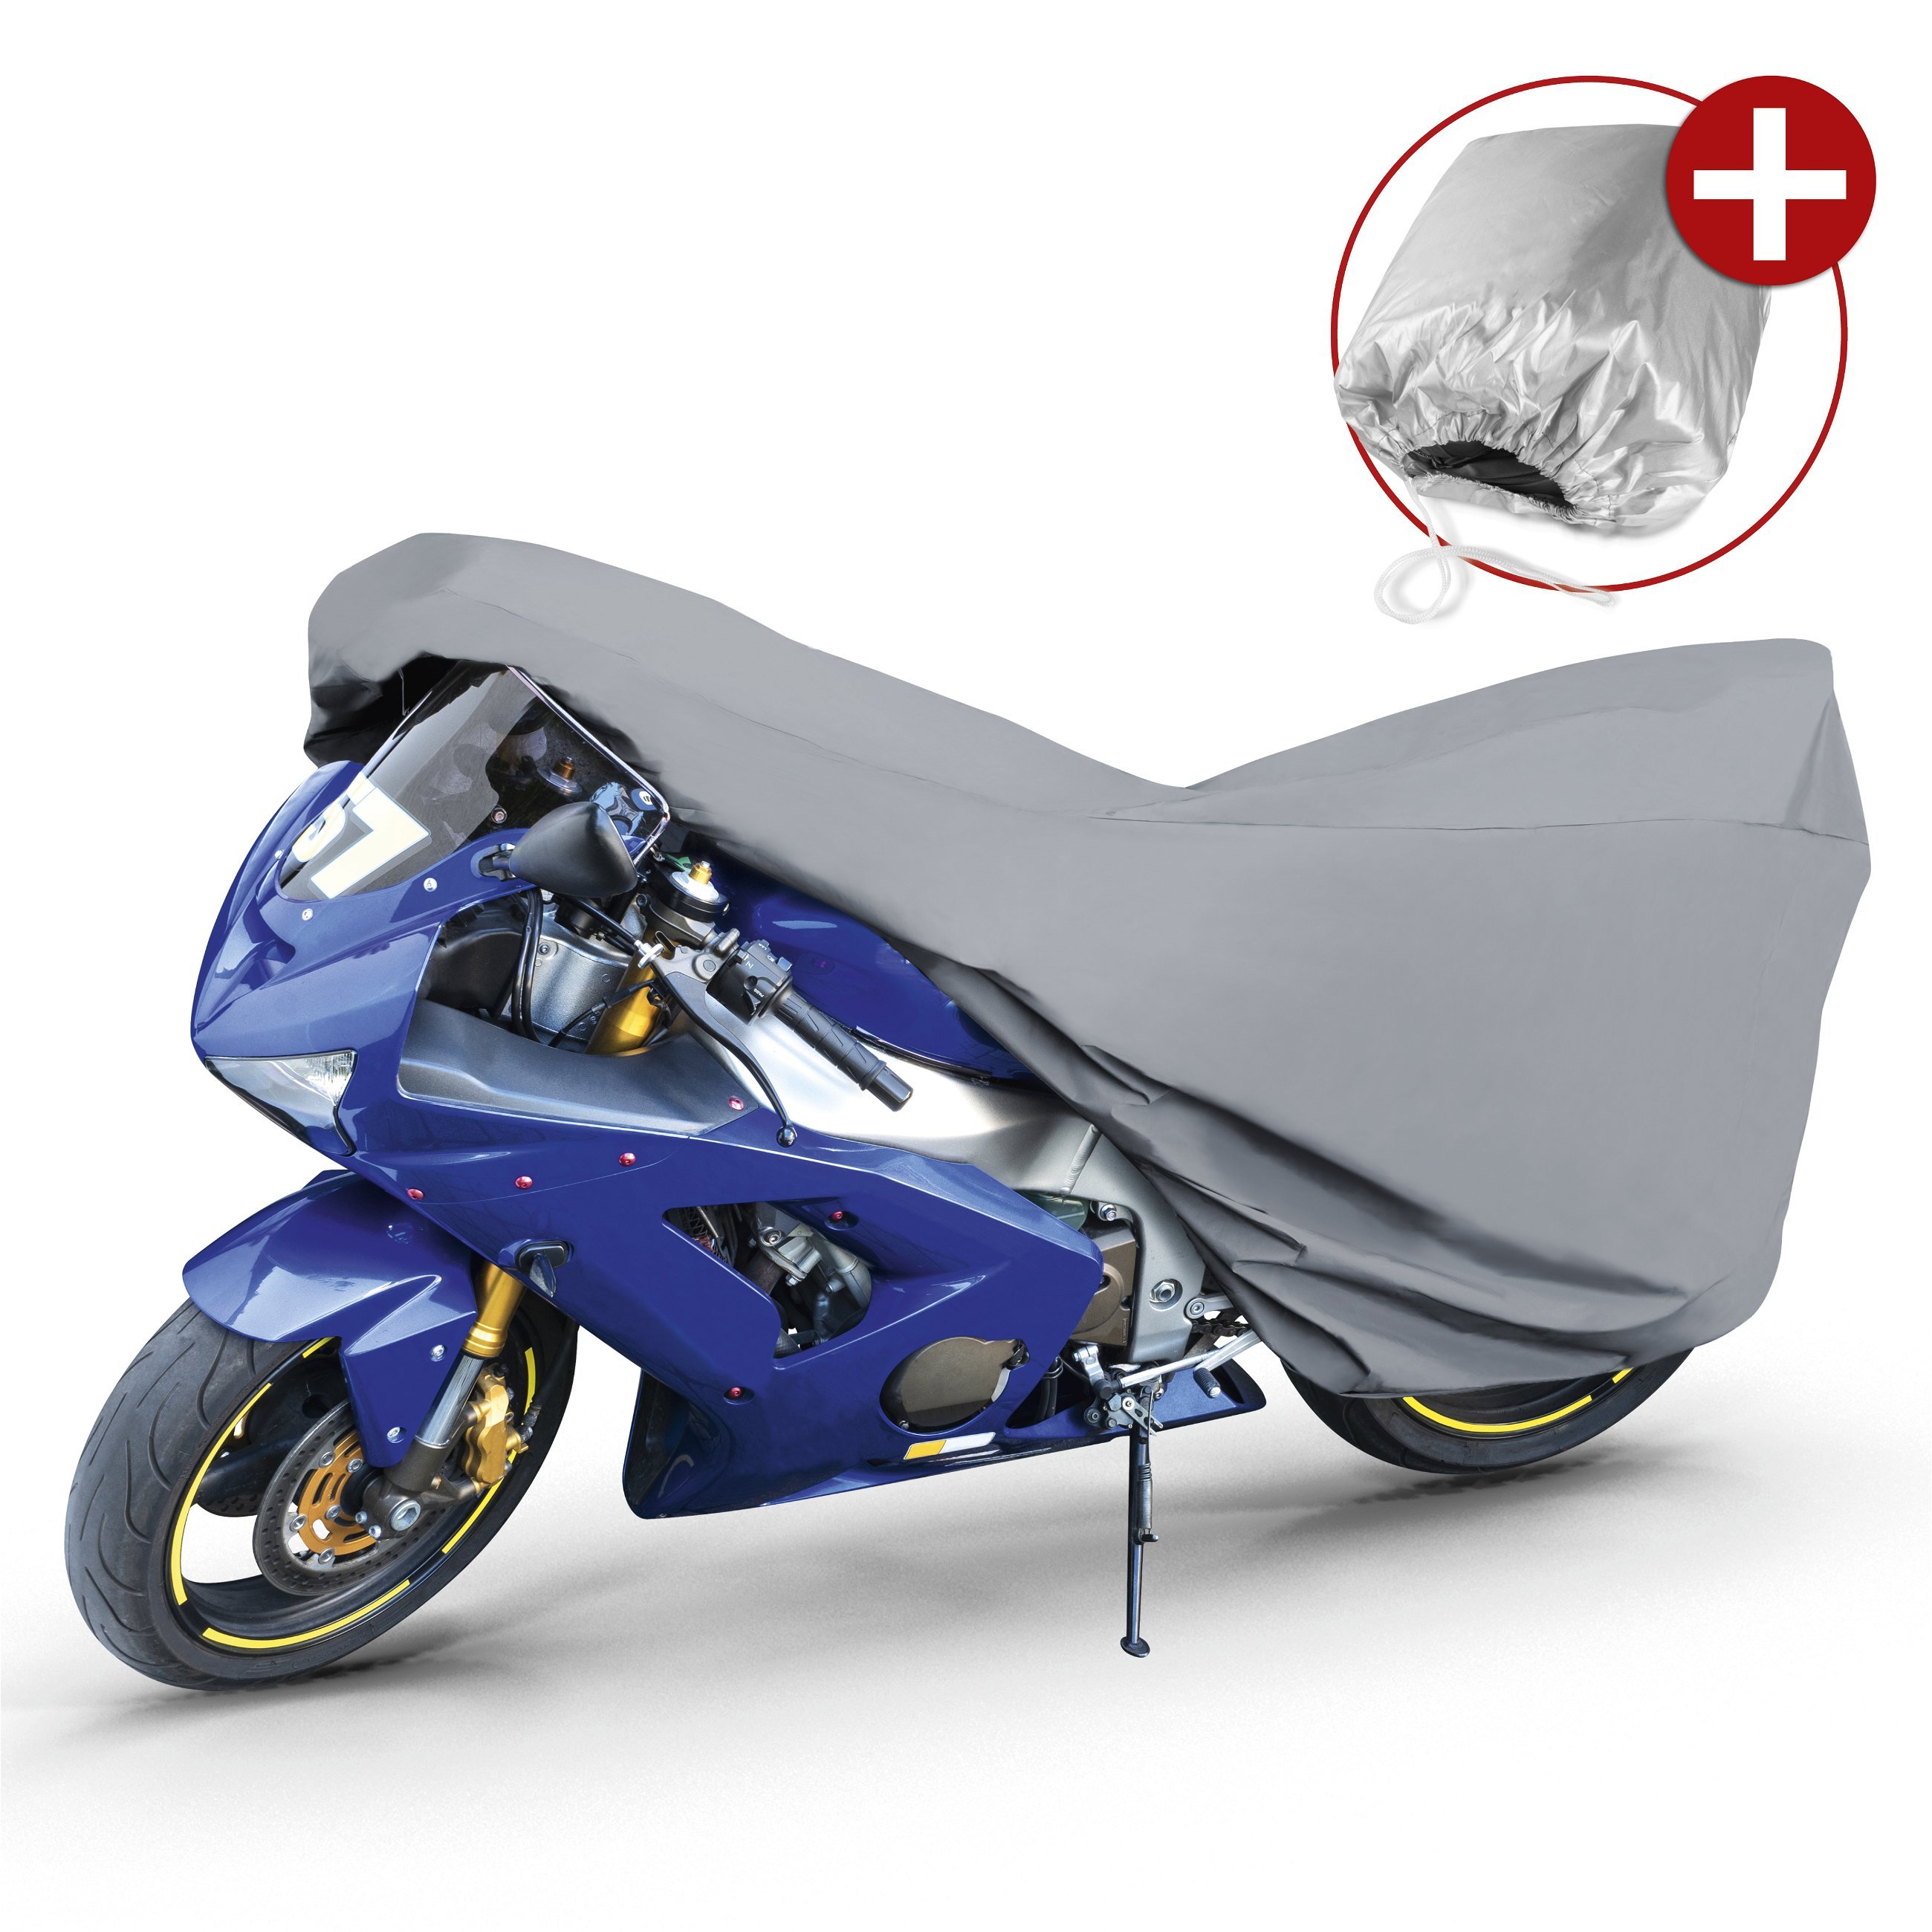 Motorrad abdeckplanen - Motorrad-Ersatzteile und Motorradzubehör